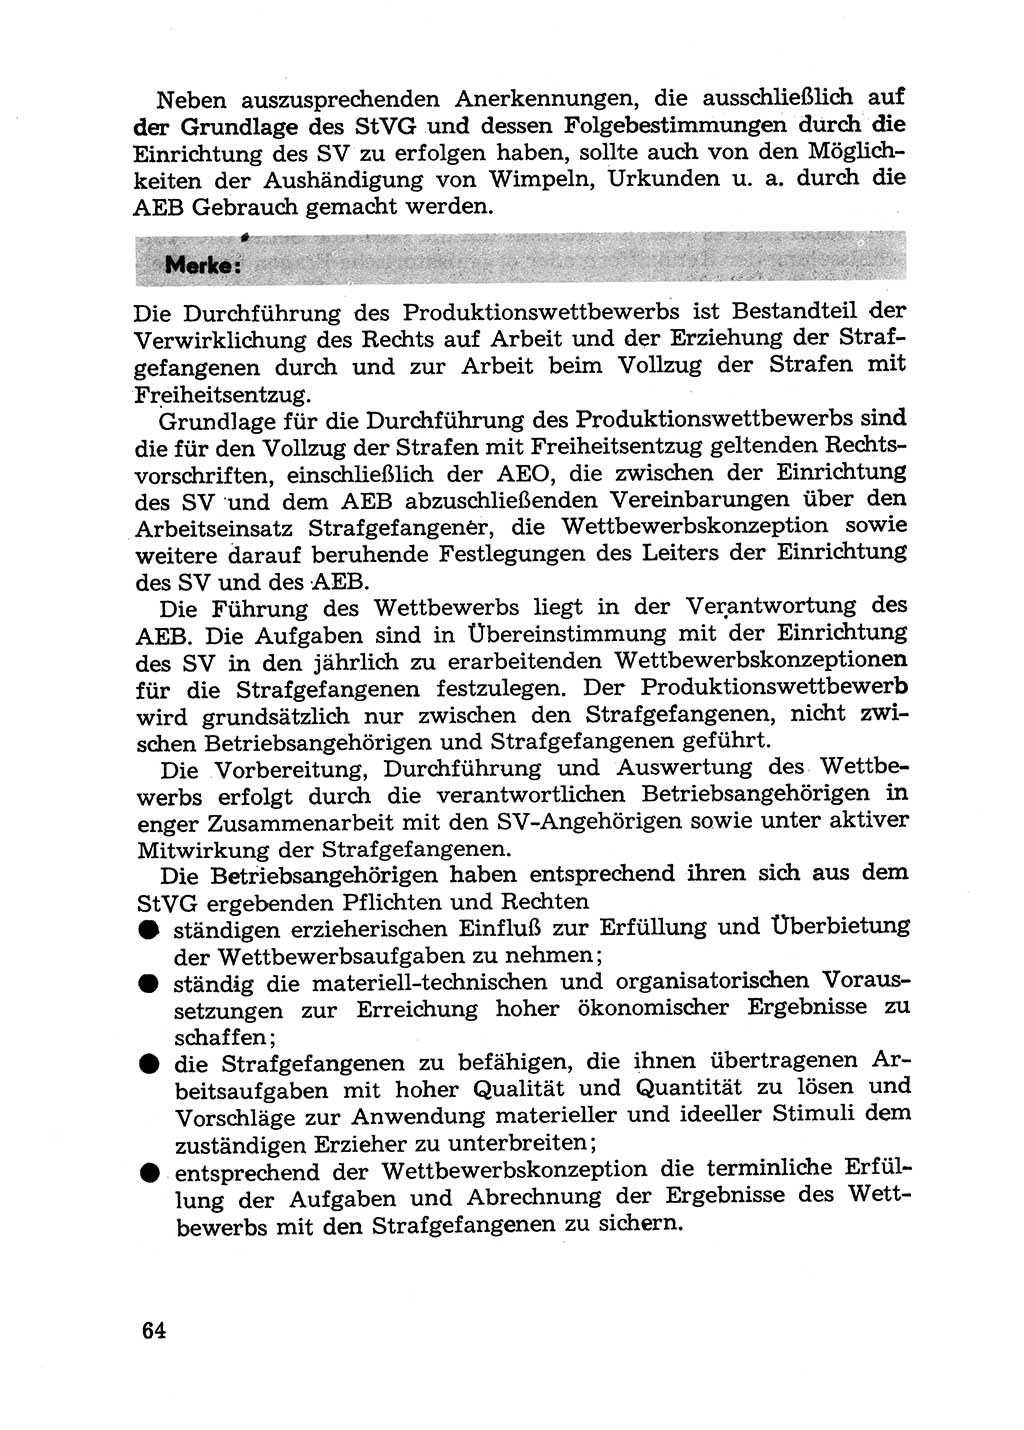 Handbuch für Betriebsangehörige, Abteilung Strafvollzug (SV) [Ministerium des Innern (MdI) Deutsche Demokratische Republik (DDR)] 1981, Seite 64 (Hb. BA Abt. SV MdI DDR 1981, S. 64)